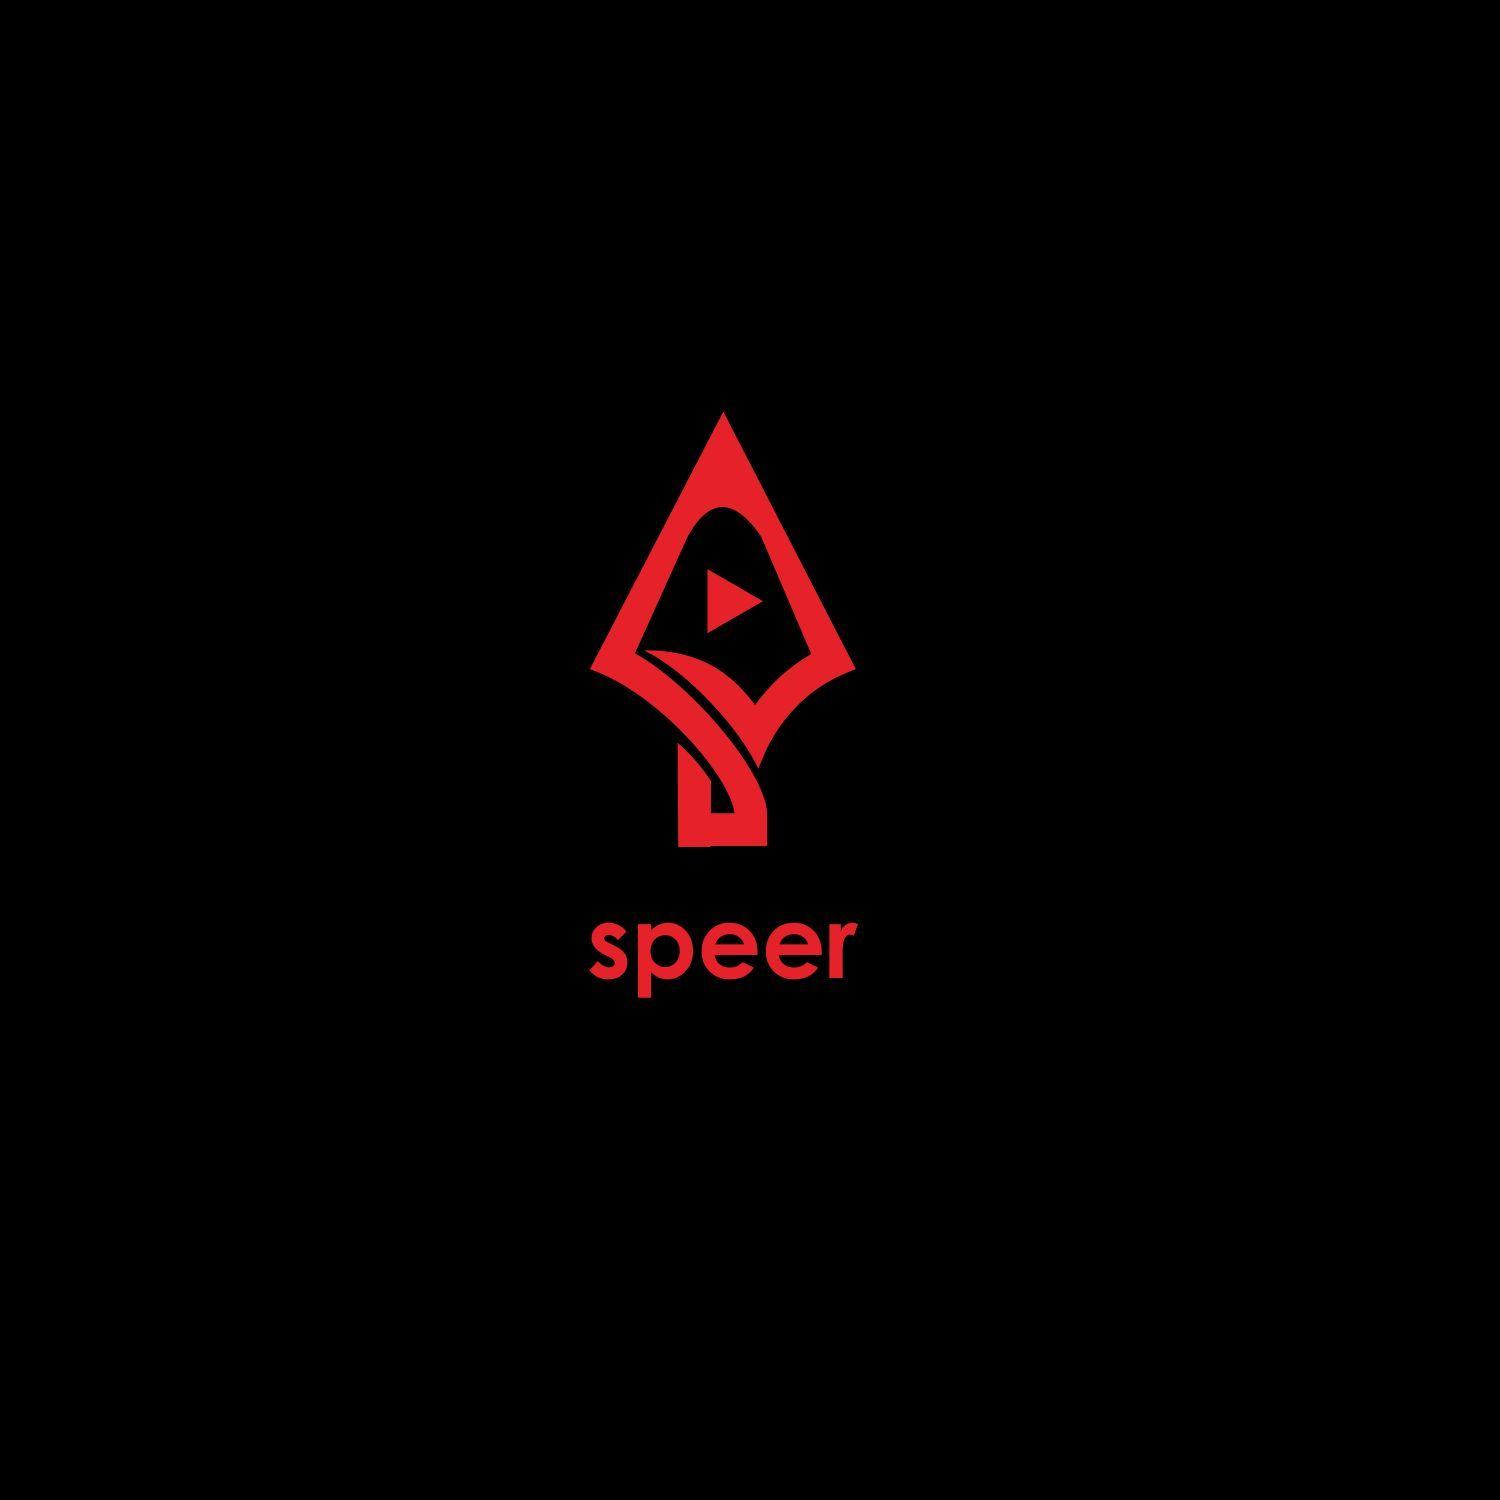 Speer Logo - Elegant, Playful Logo Design for speer by Andre_bwid. Design